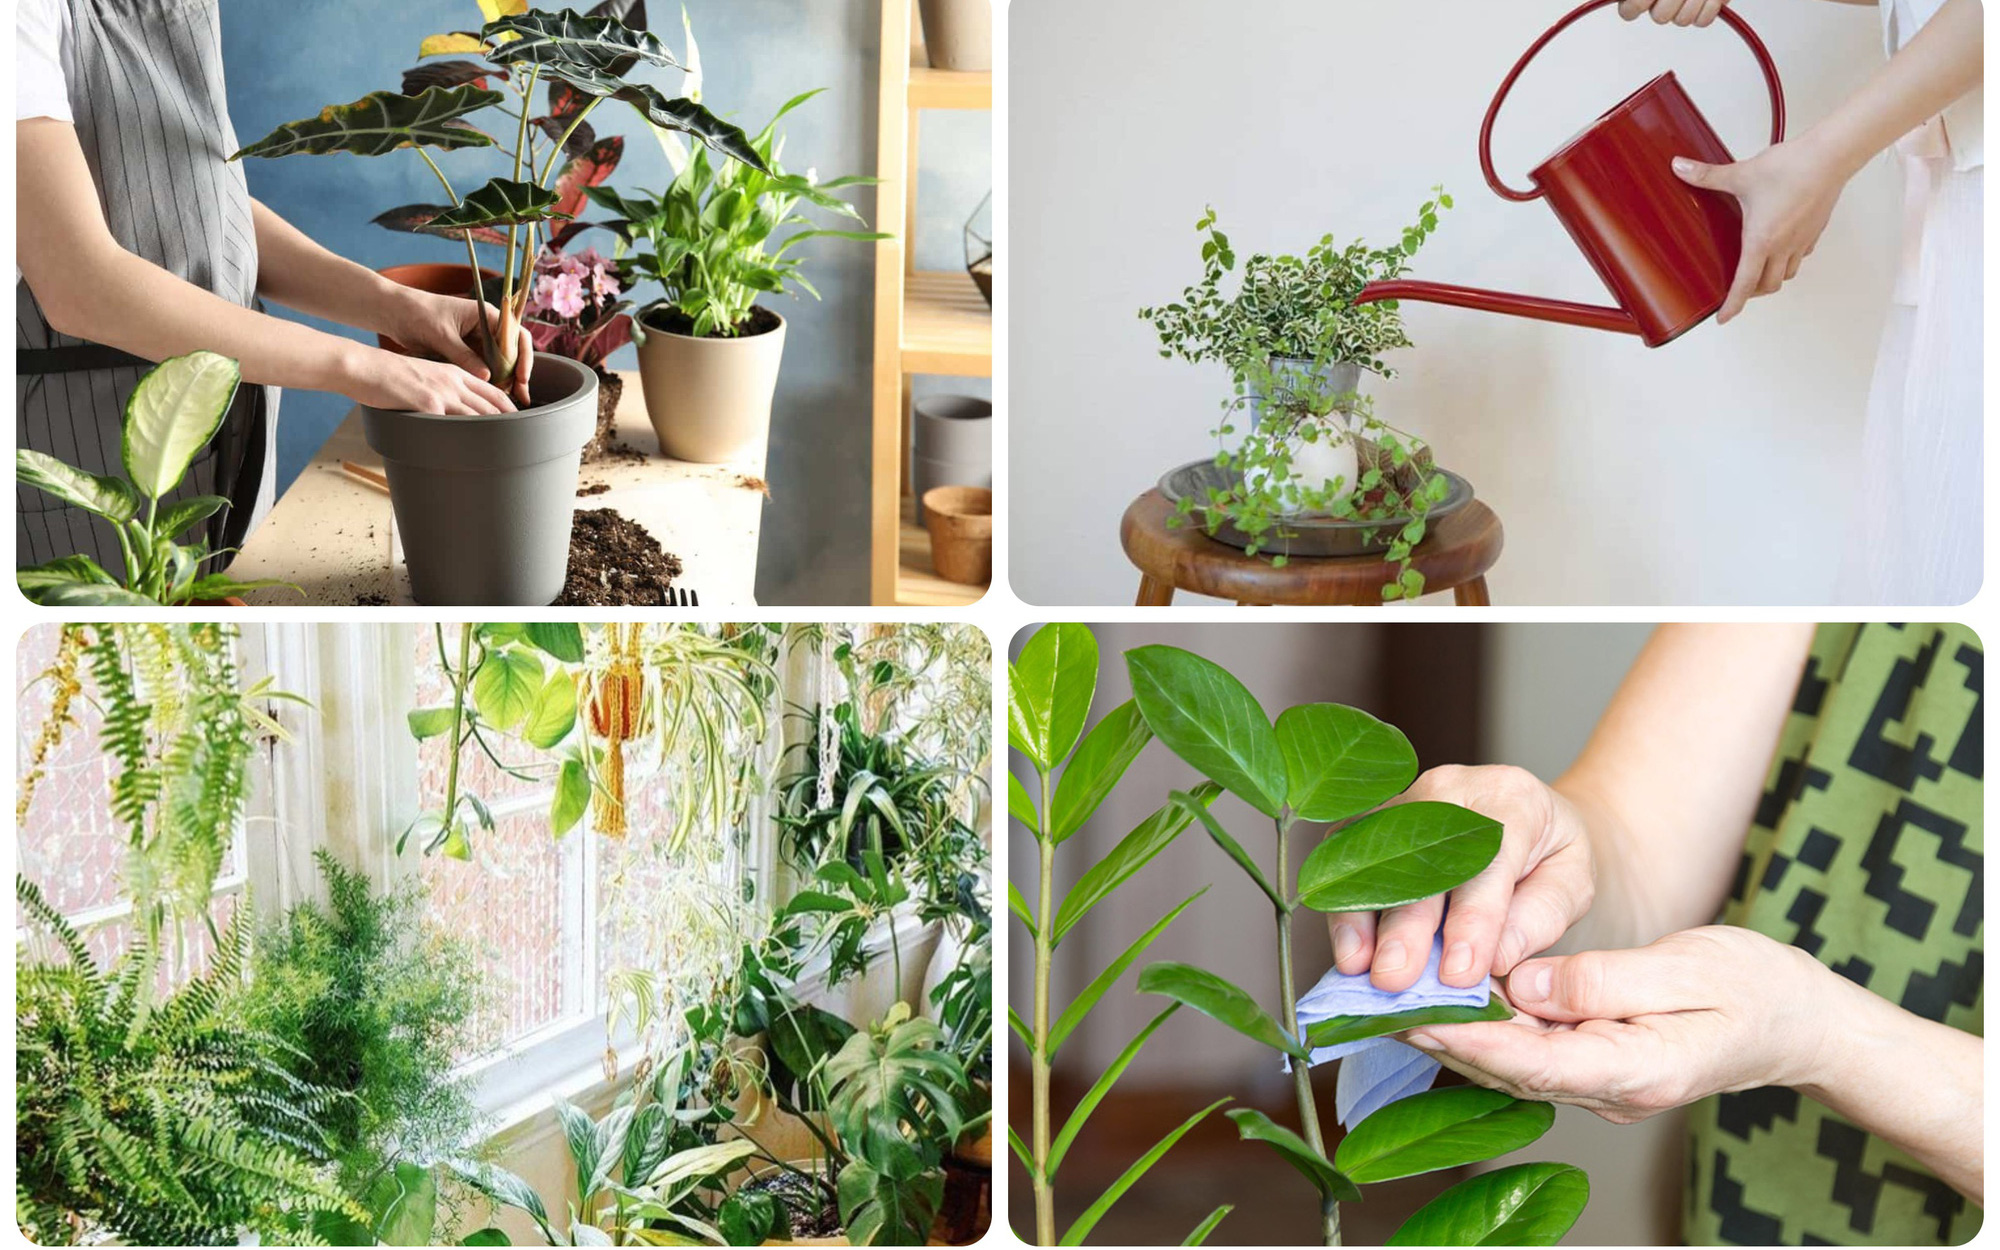 "Bỏ túi" ngay 4 mẹo cực dễ này giúp cây cảnh trồng trong nhà bạn quanh năm tươi tốt và khỏe mạnh